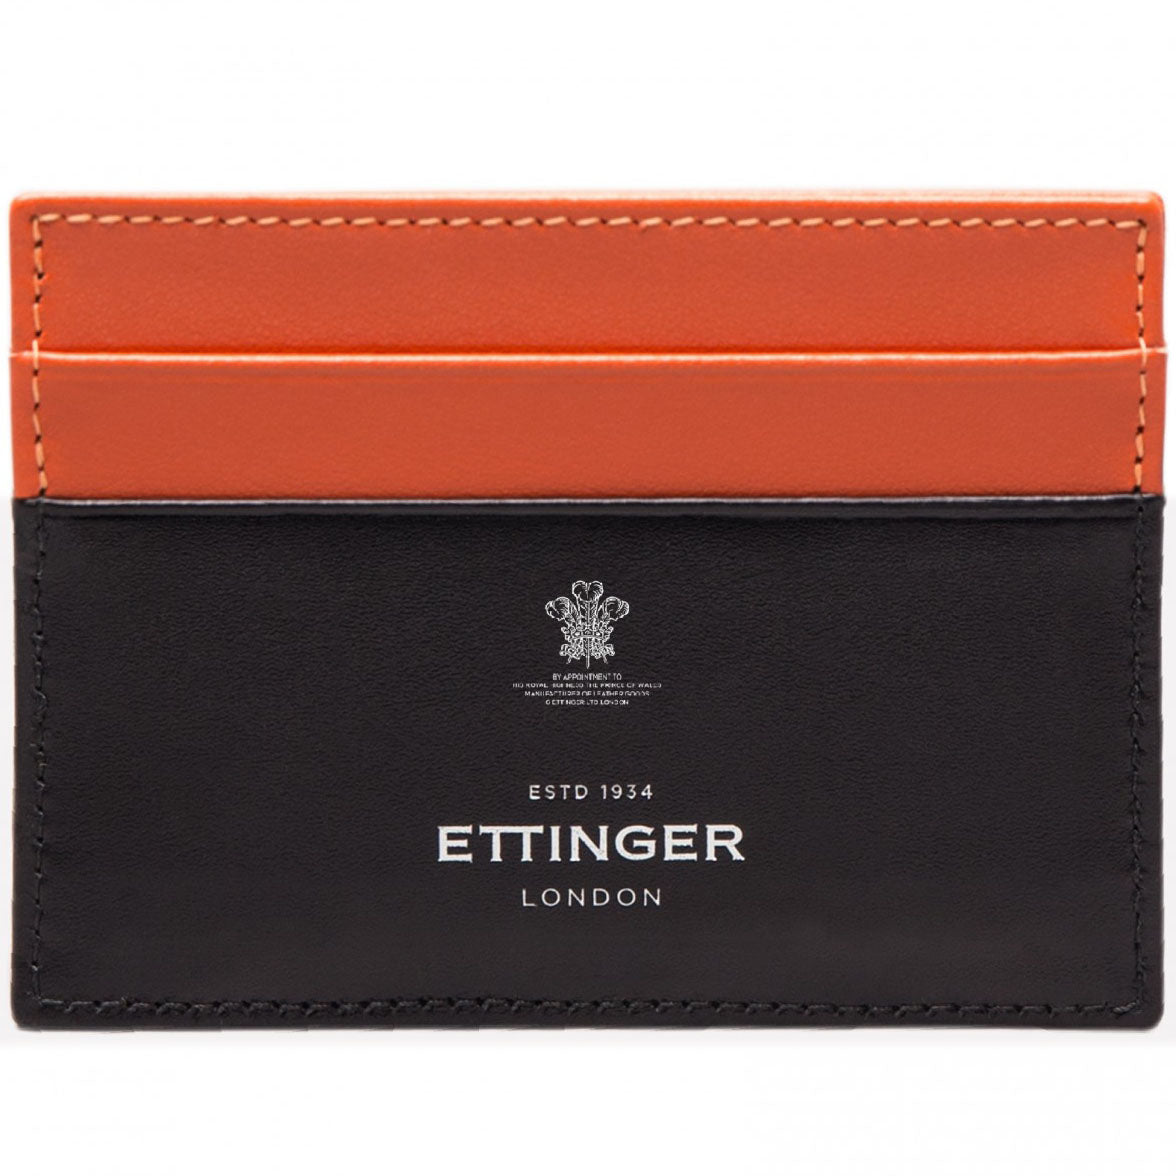 Ettinger Men's Sterling Flat Credit Card Case, Orange and Black